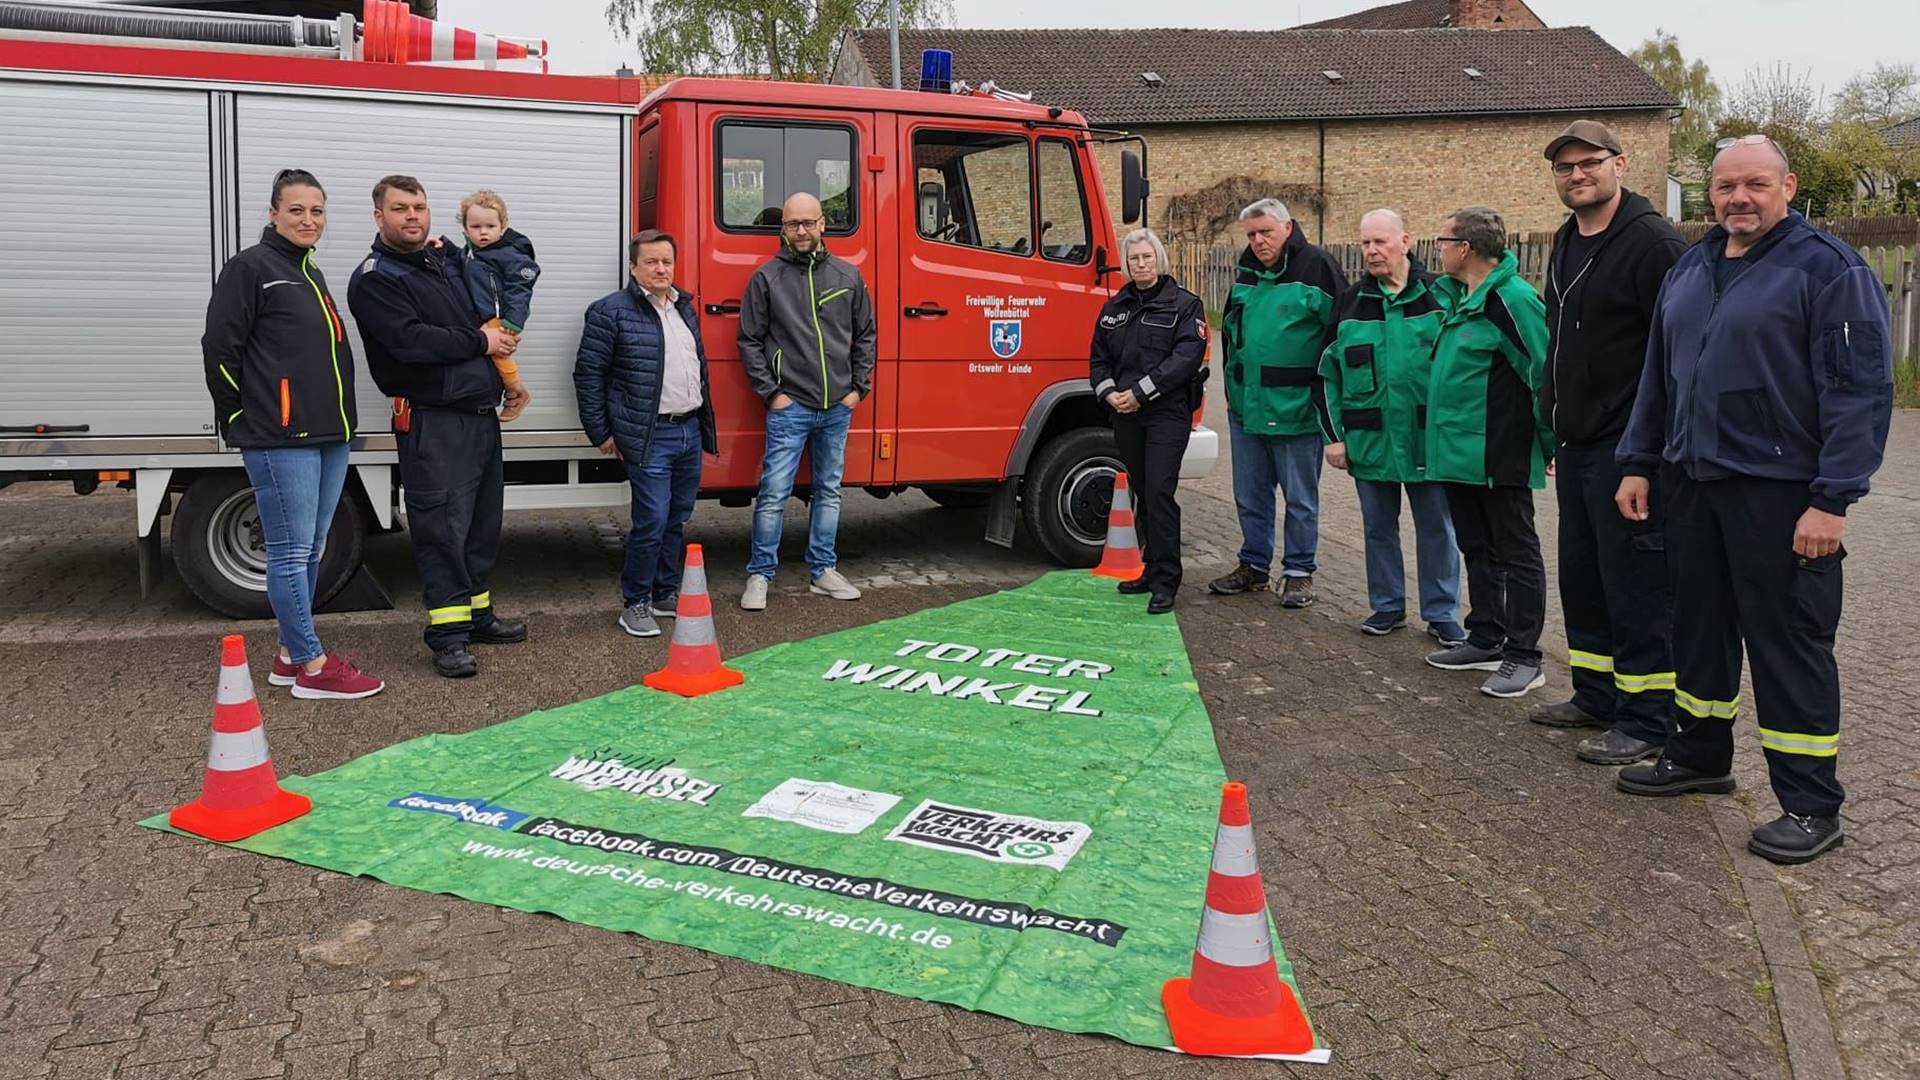 Gruppenbild mit elf Personen vor einem Feuerwehrfahrzeug. Davor liegt ein grünes Dreieck mit der Aufschrift "Toter Winkel".